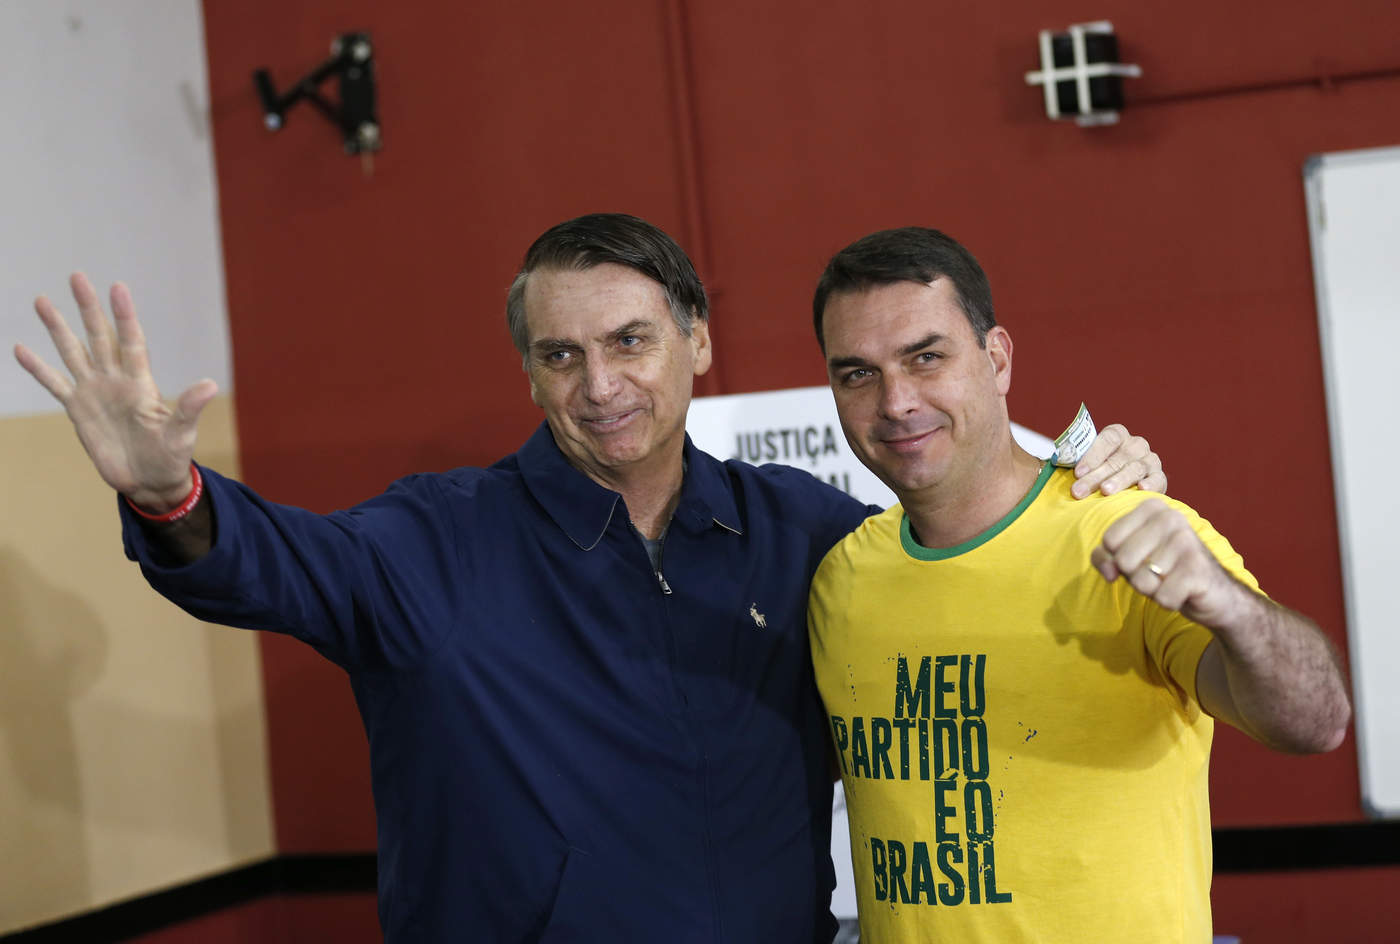 El hijo del mandatario, Flavio Bolsonaro, ha sido objeto de críticas luego de que el Consejo de Control de Actividades Financieras, el organismo regulador financiero del país, dio a conocer unos pagos sospechosos a su exchofer. (ARCHIVO)